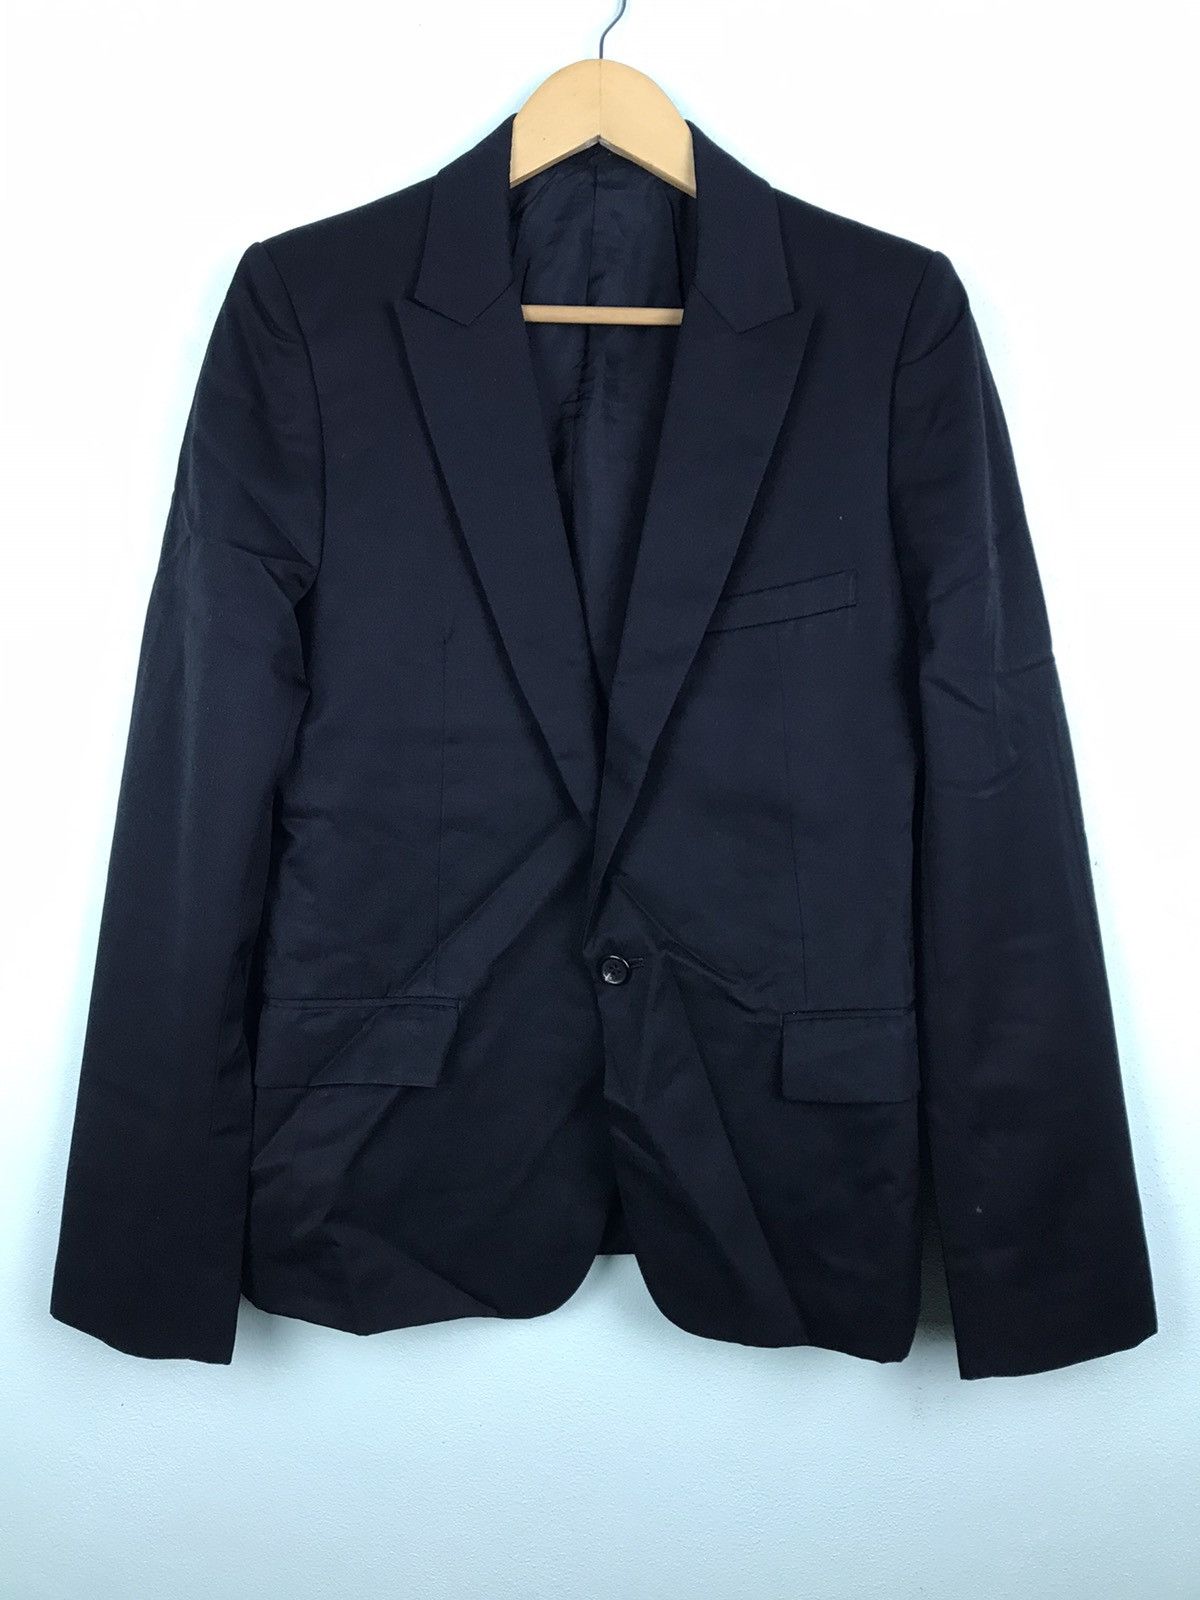 LAST DROP!! Undercoverism Black Wool Suits jacket - Gh5719 - 1